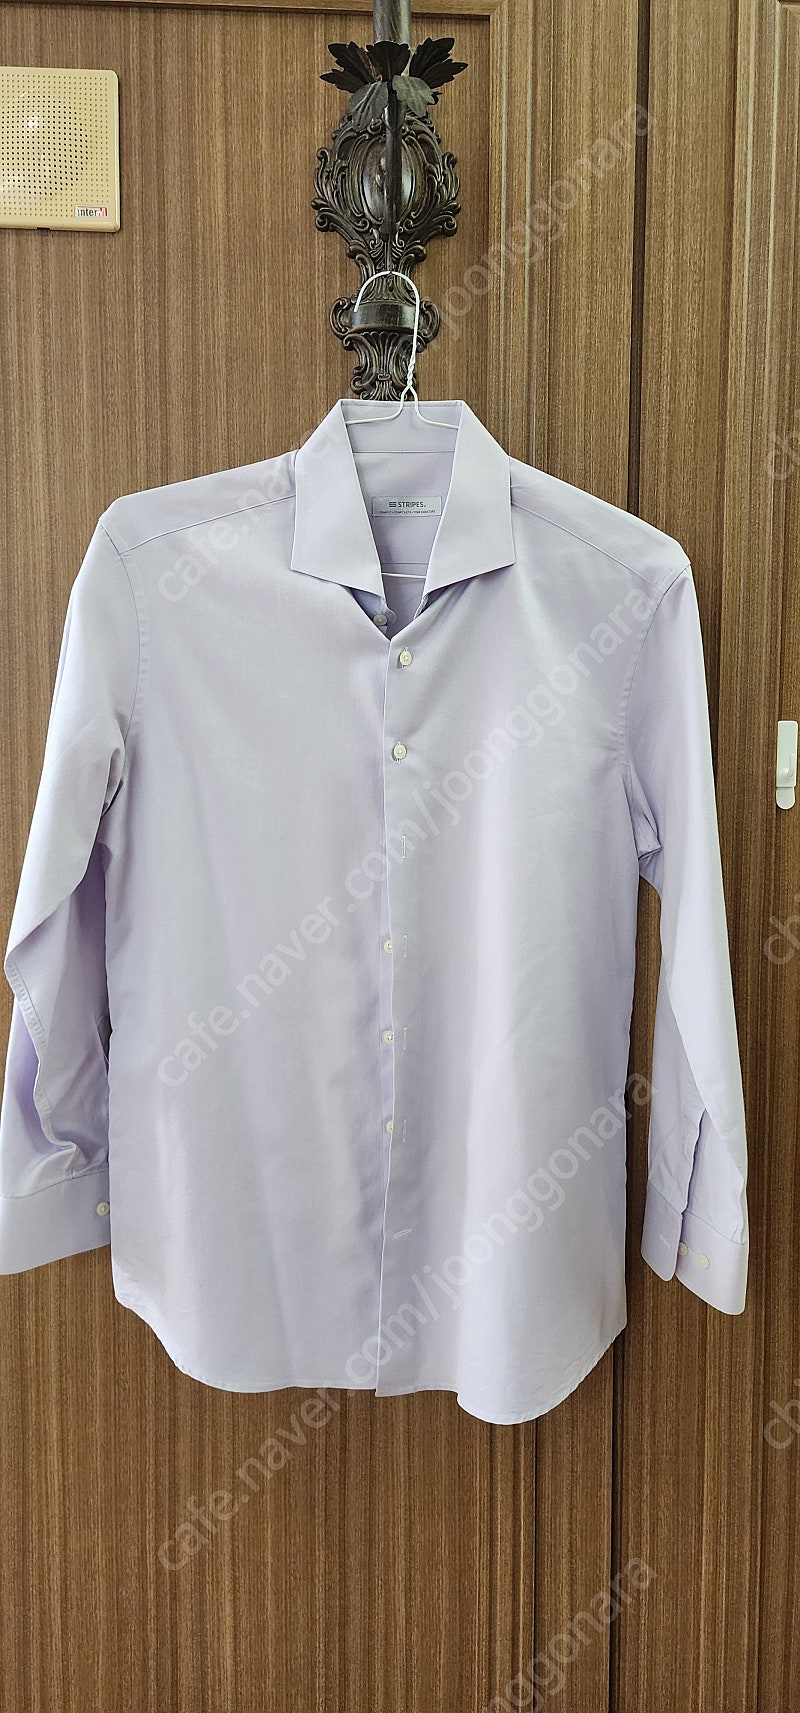 가격인하)아소스 블랙 자켓 와이셔츠